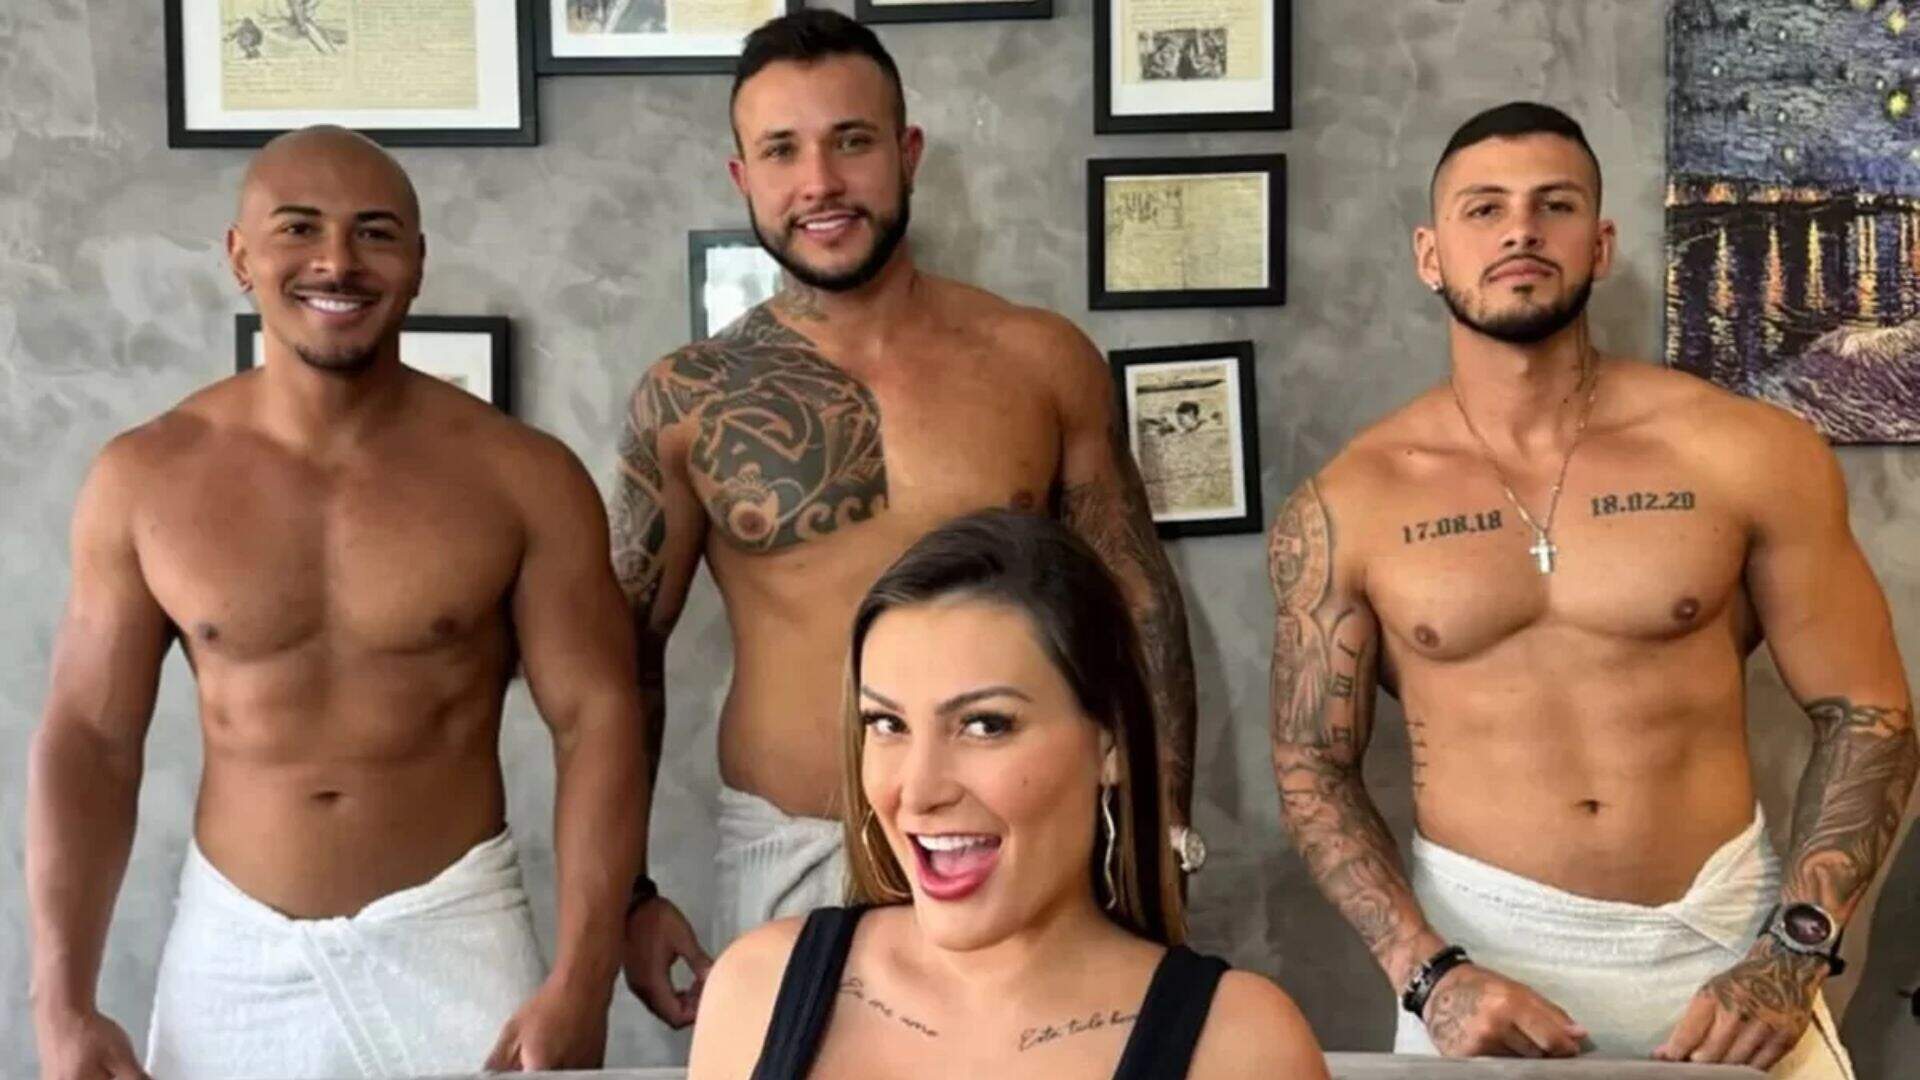 COMO ASSIM? Andressa Urach revela que fará shows com sexo ao vivo pelo Brasil - Metropolitana FM